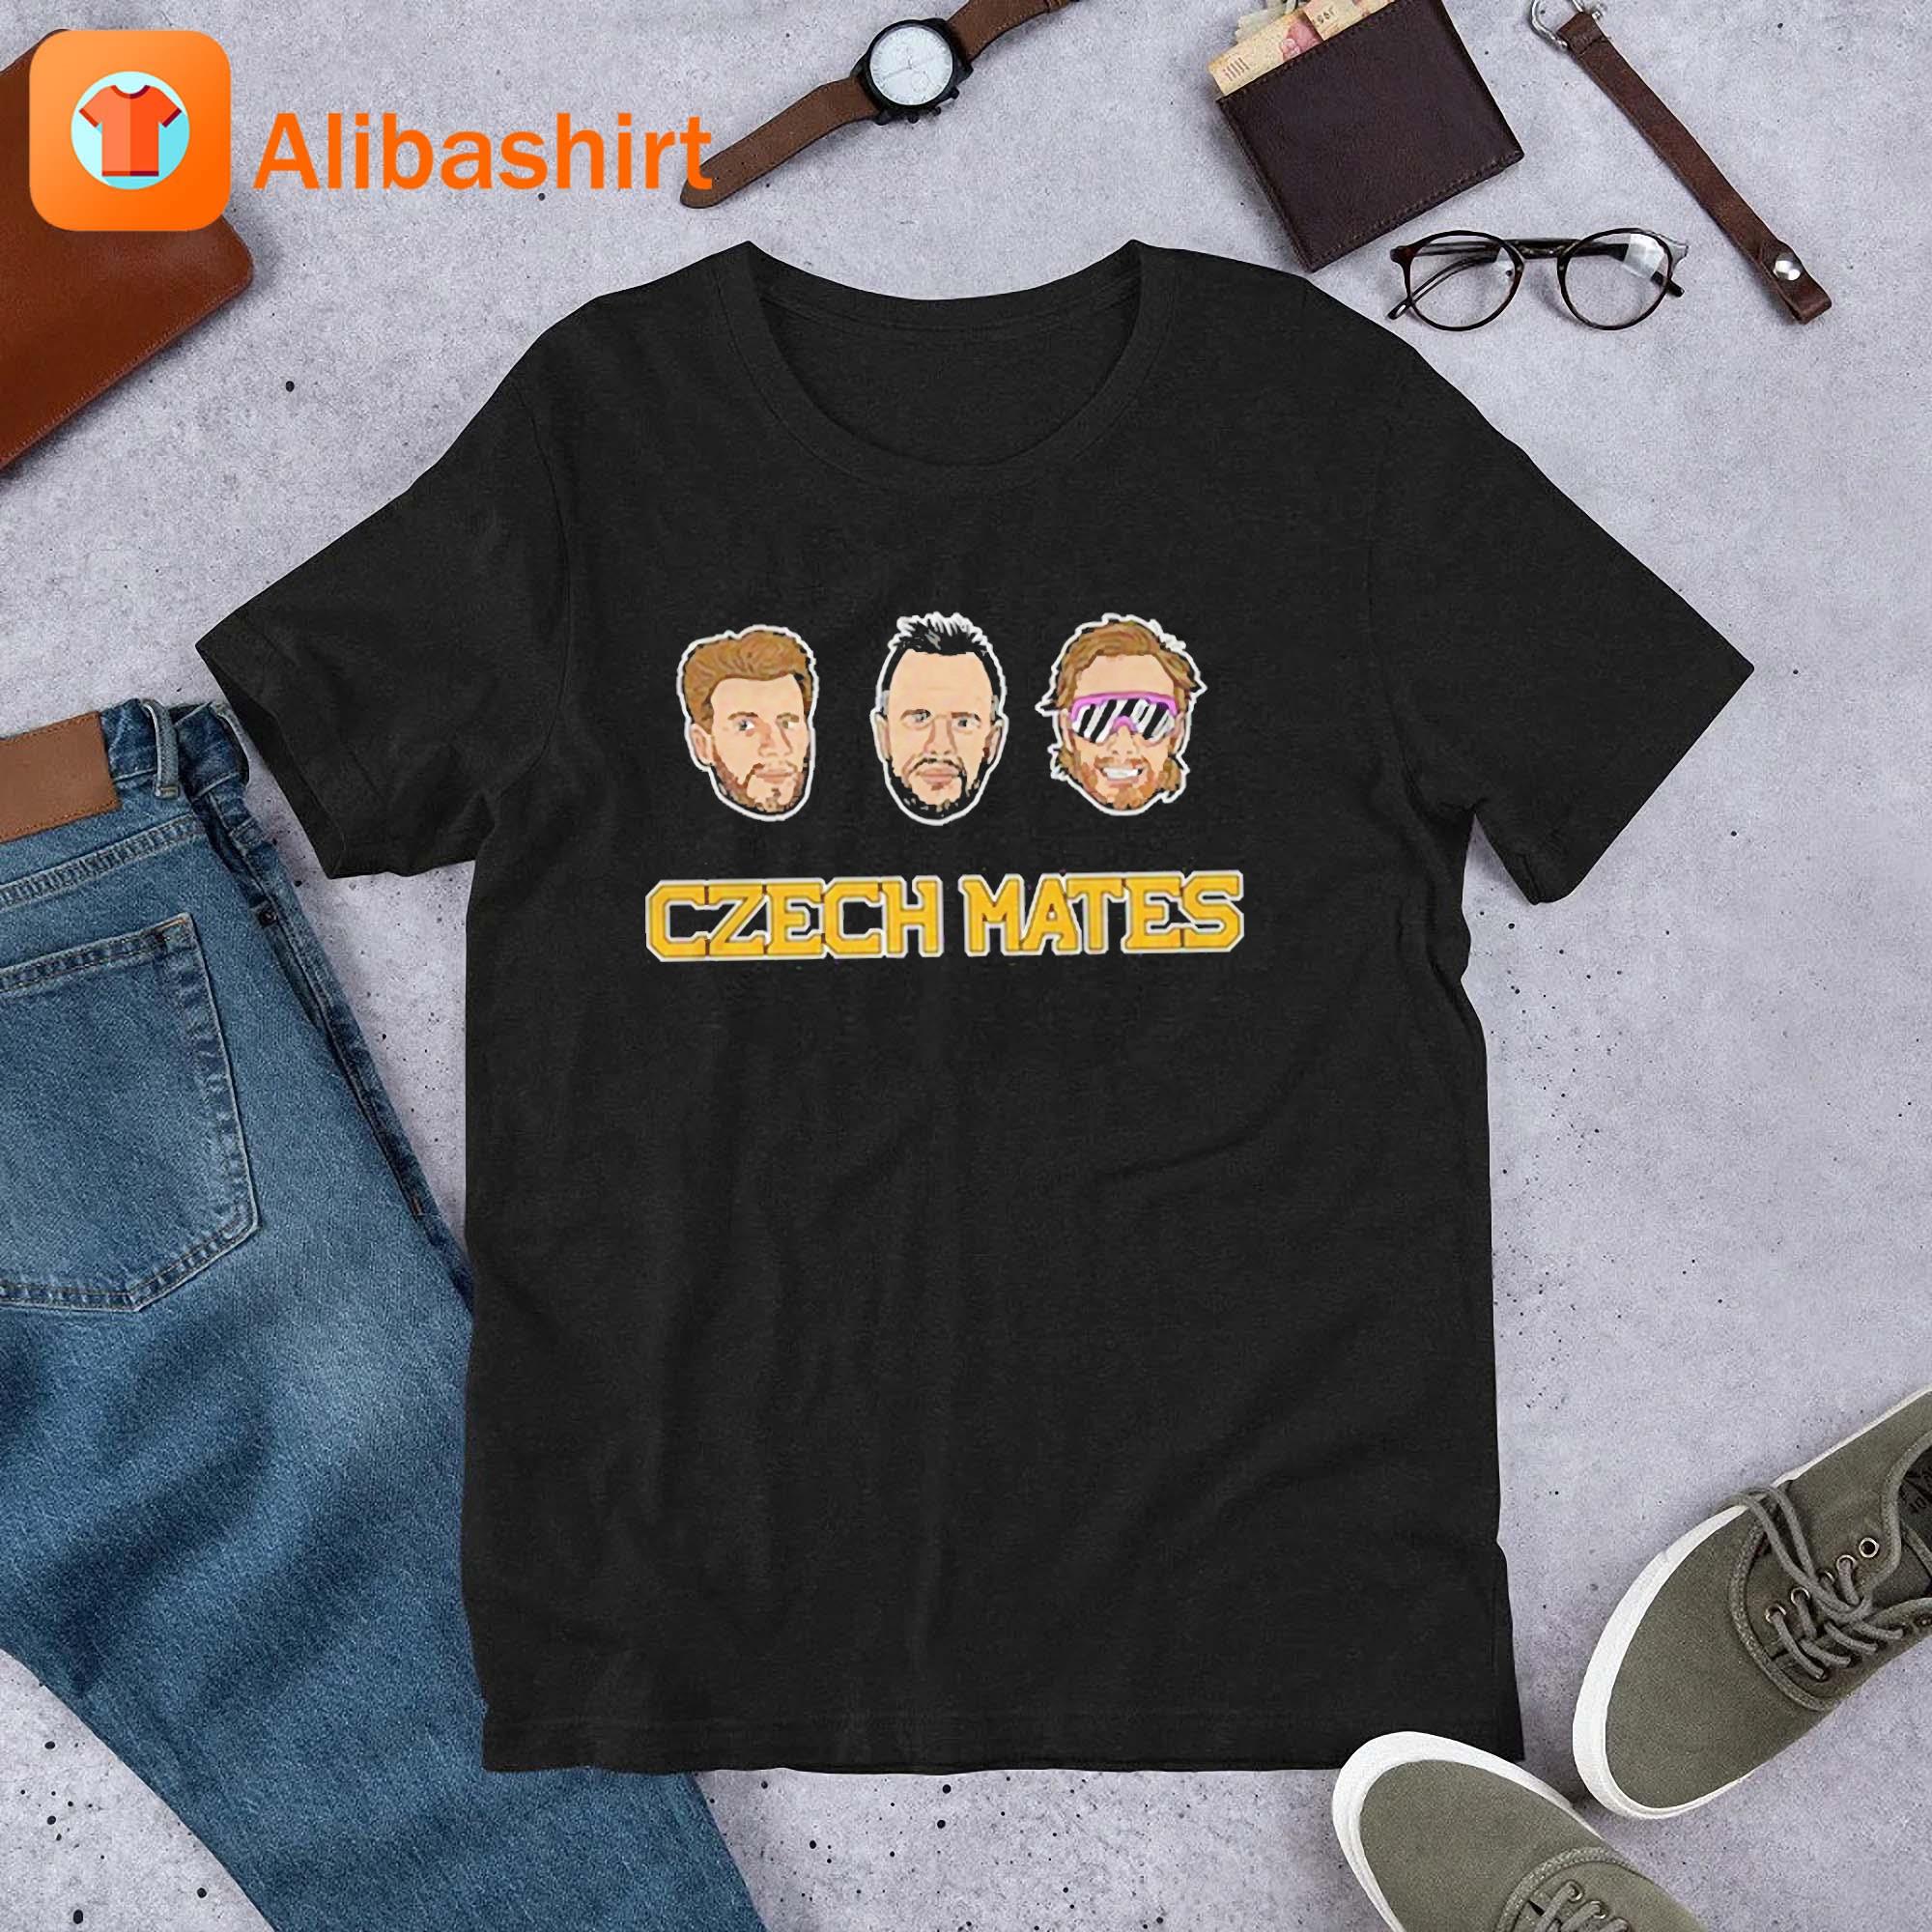 Czech Mates Shirt